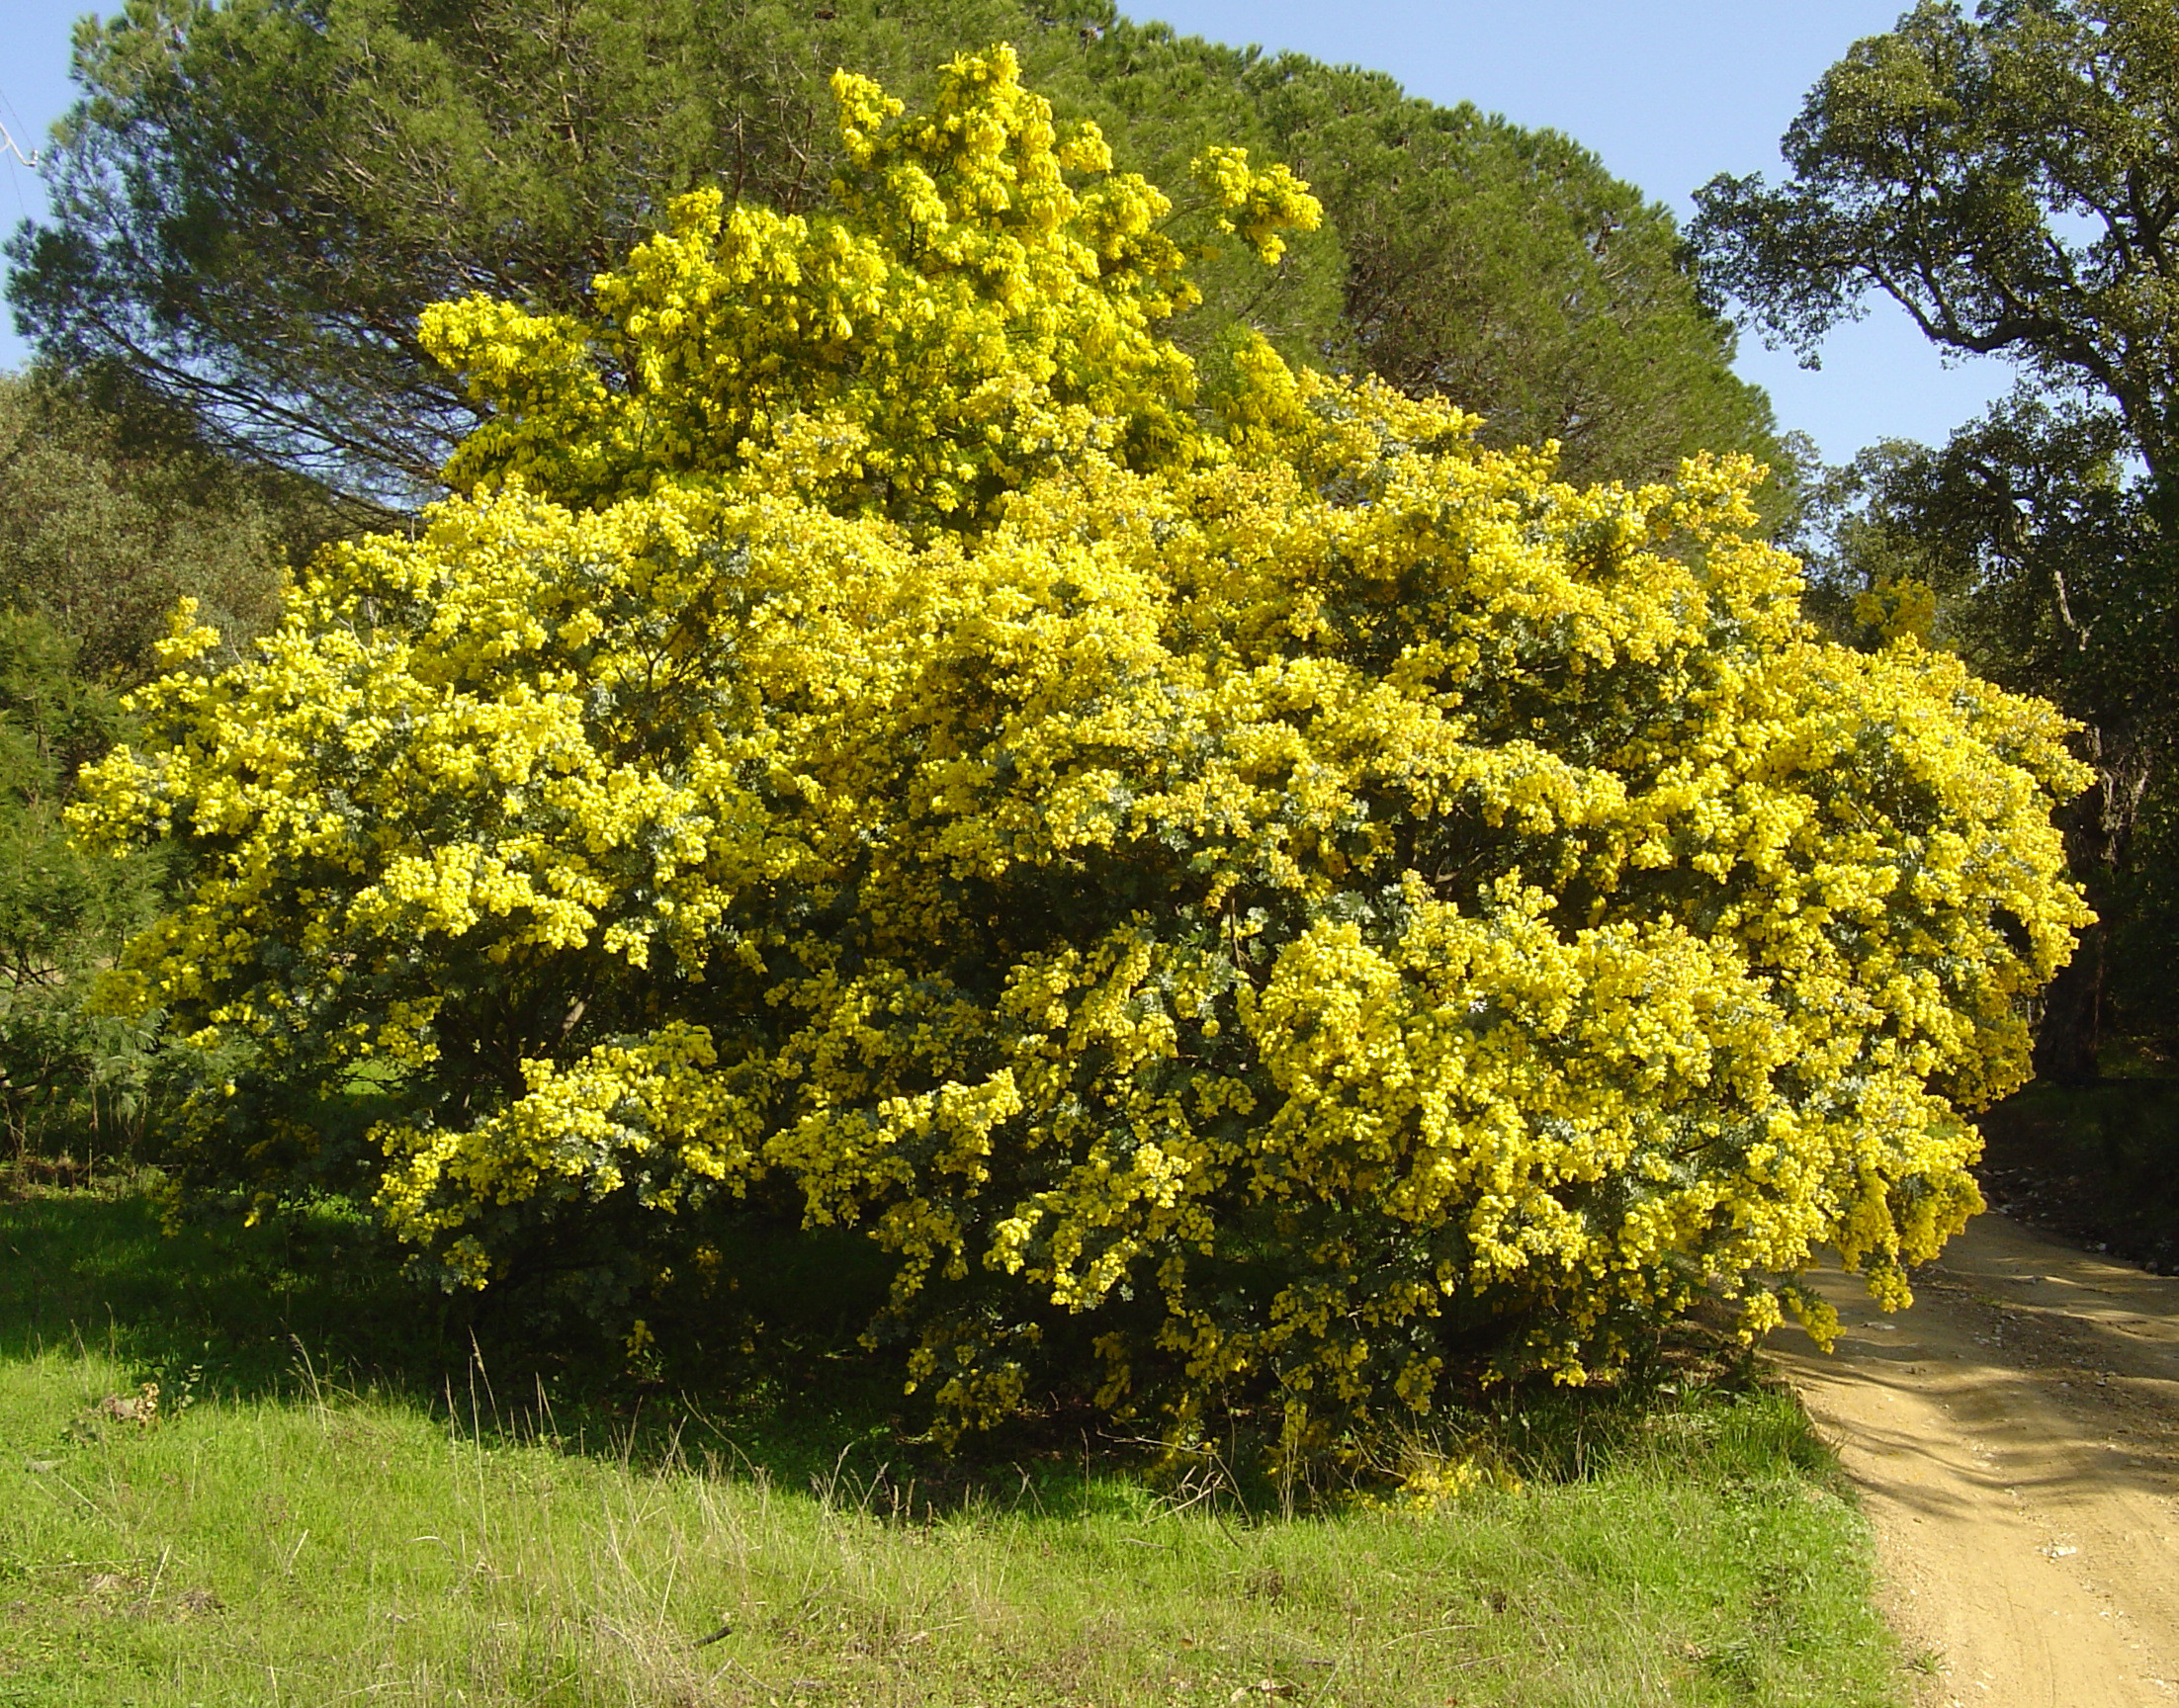 Acacia baileyana